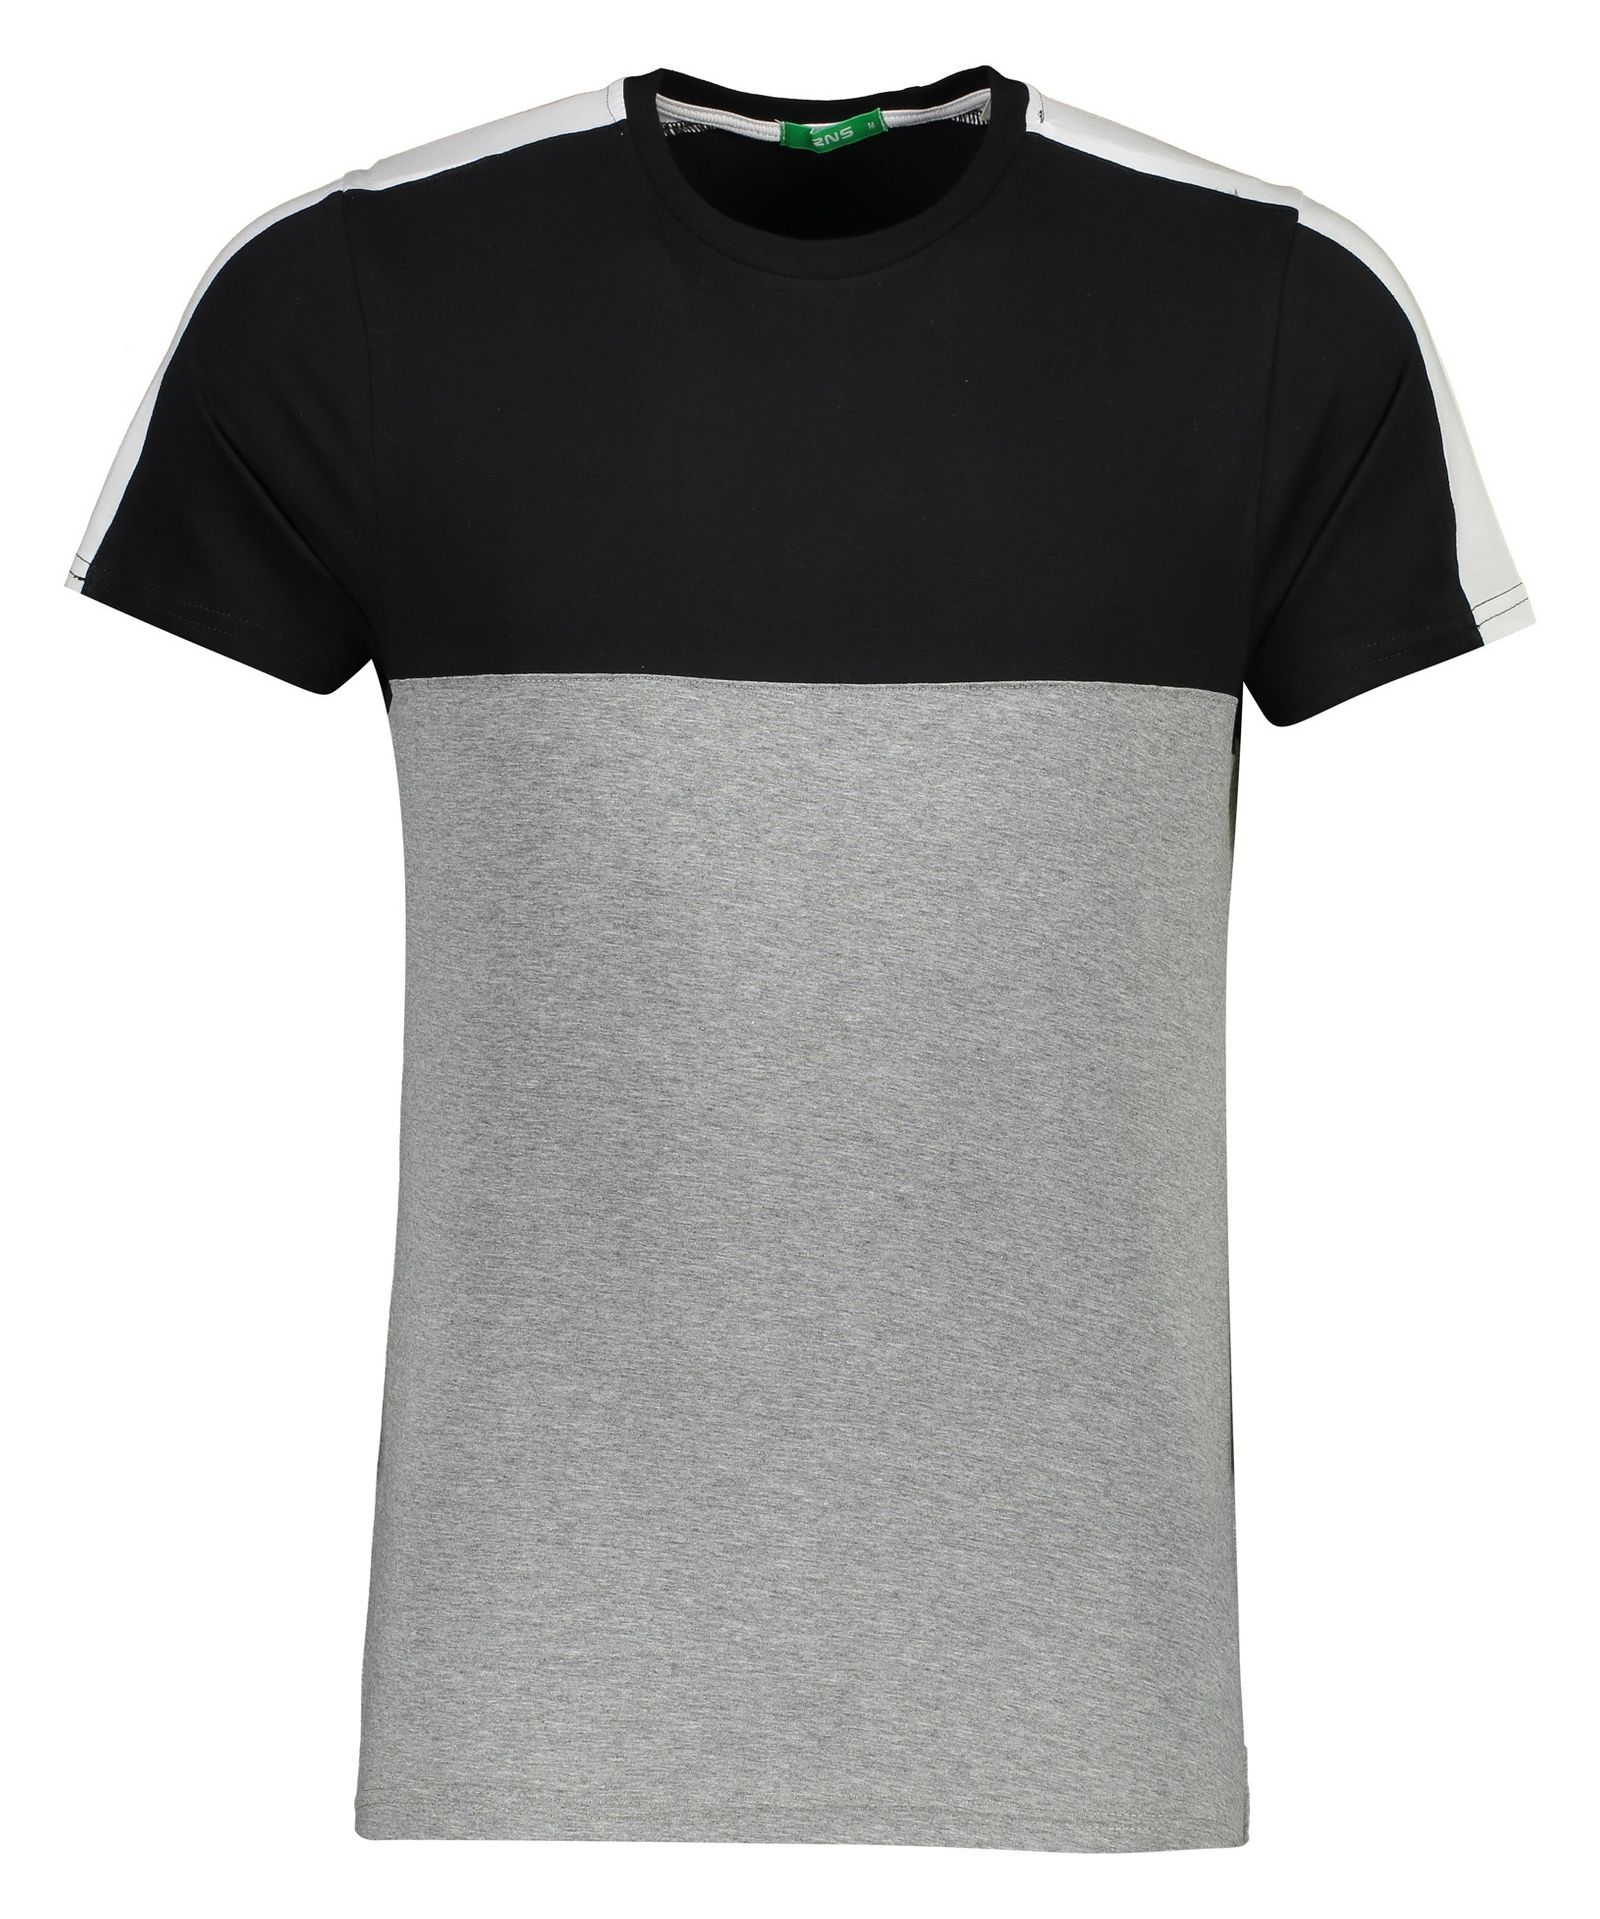 تی شرت مردانه آر ان اس مدل 1131109-99 -  - 2